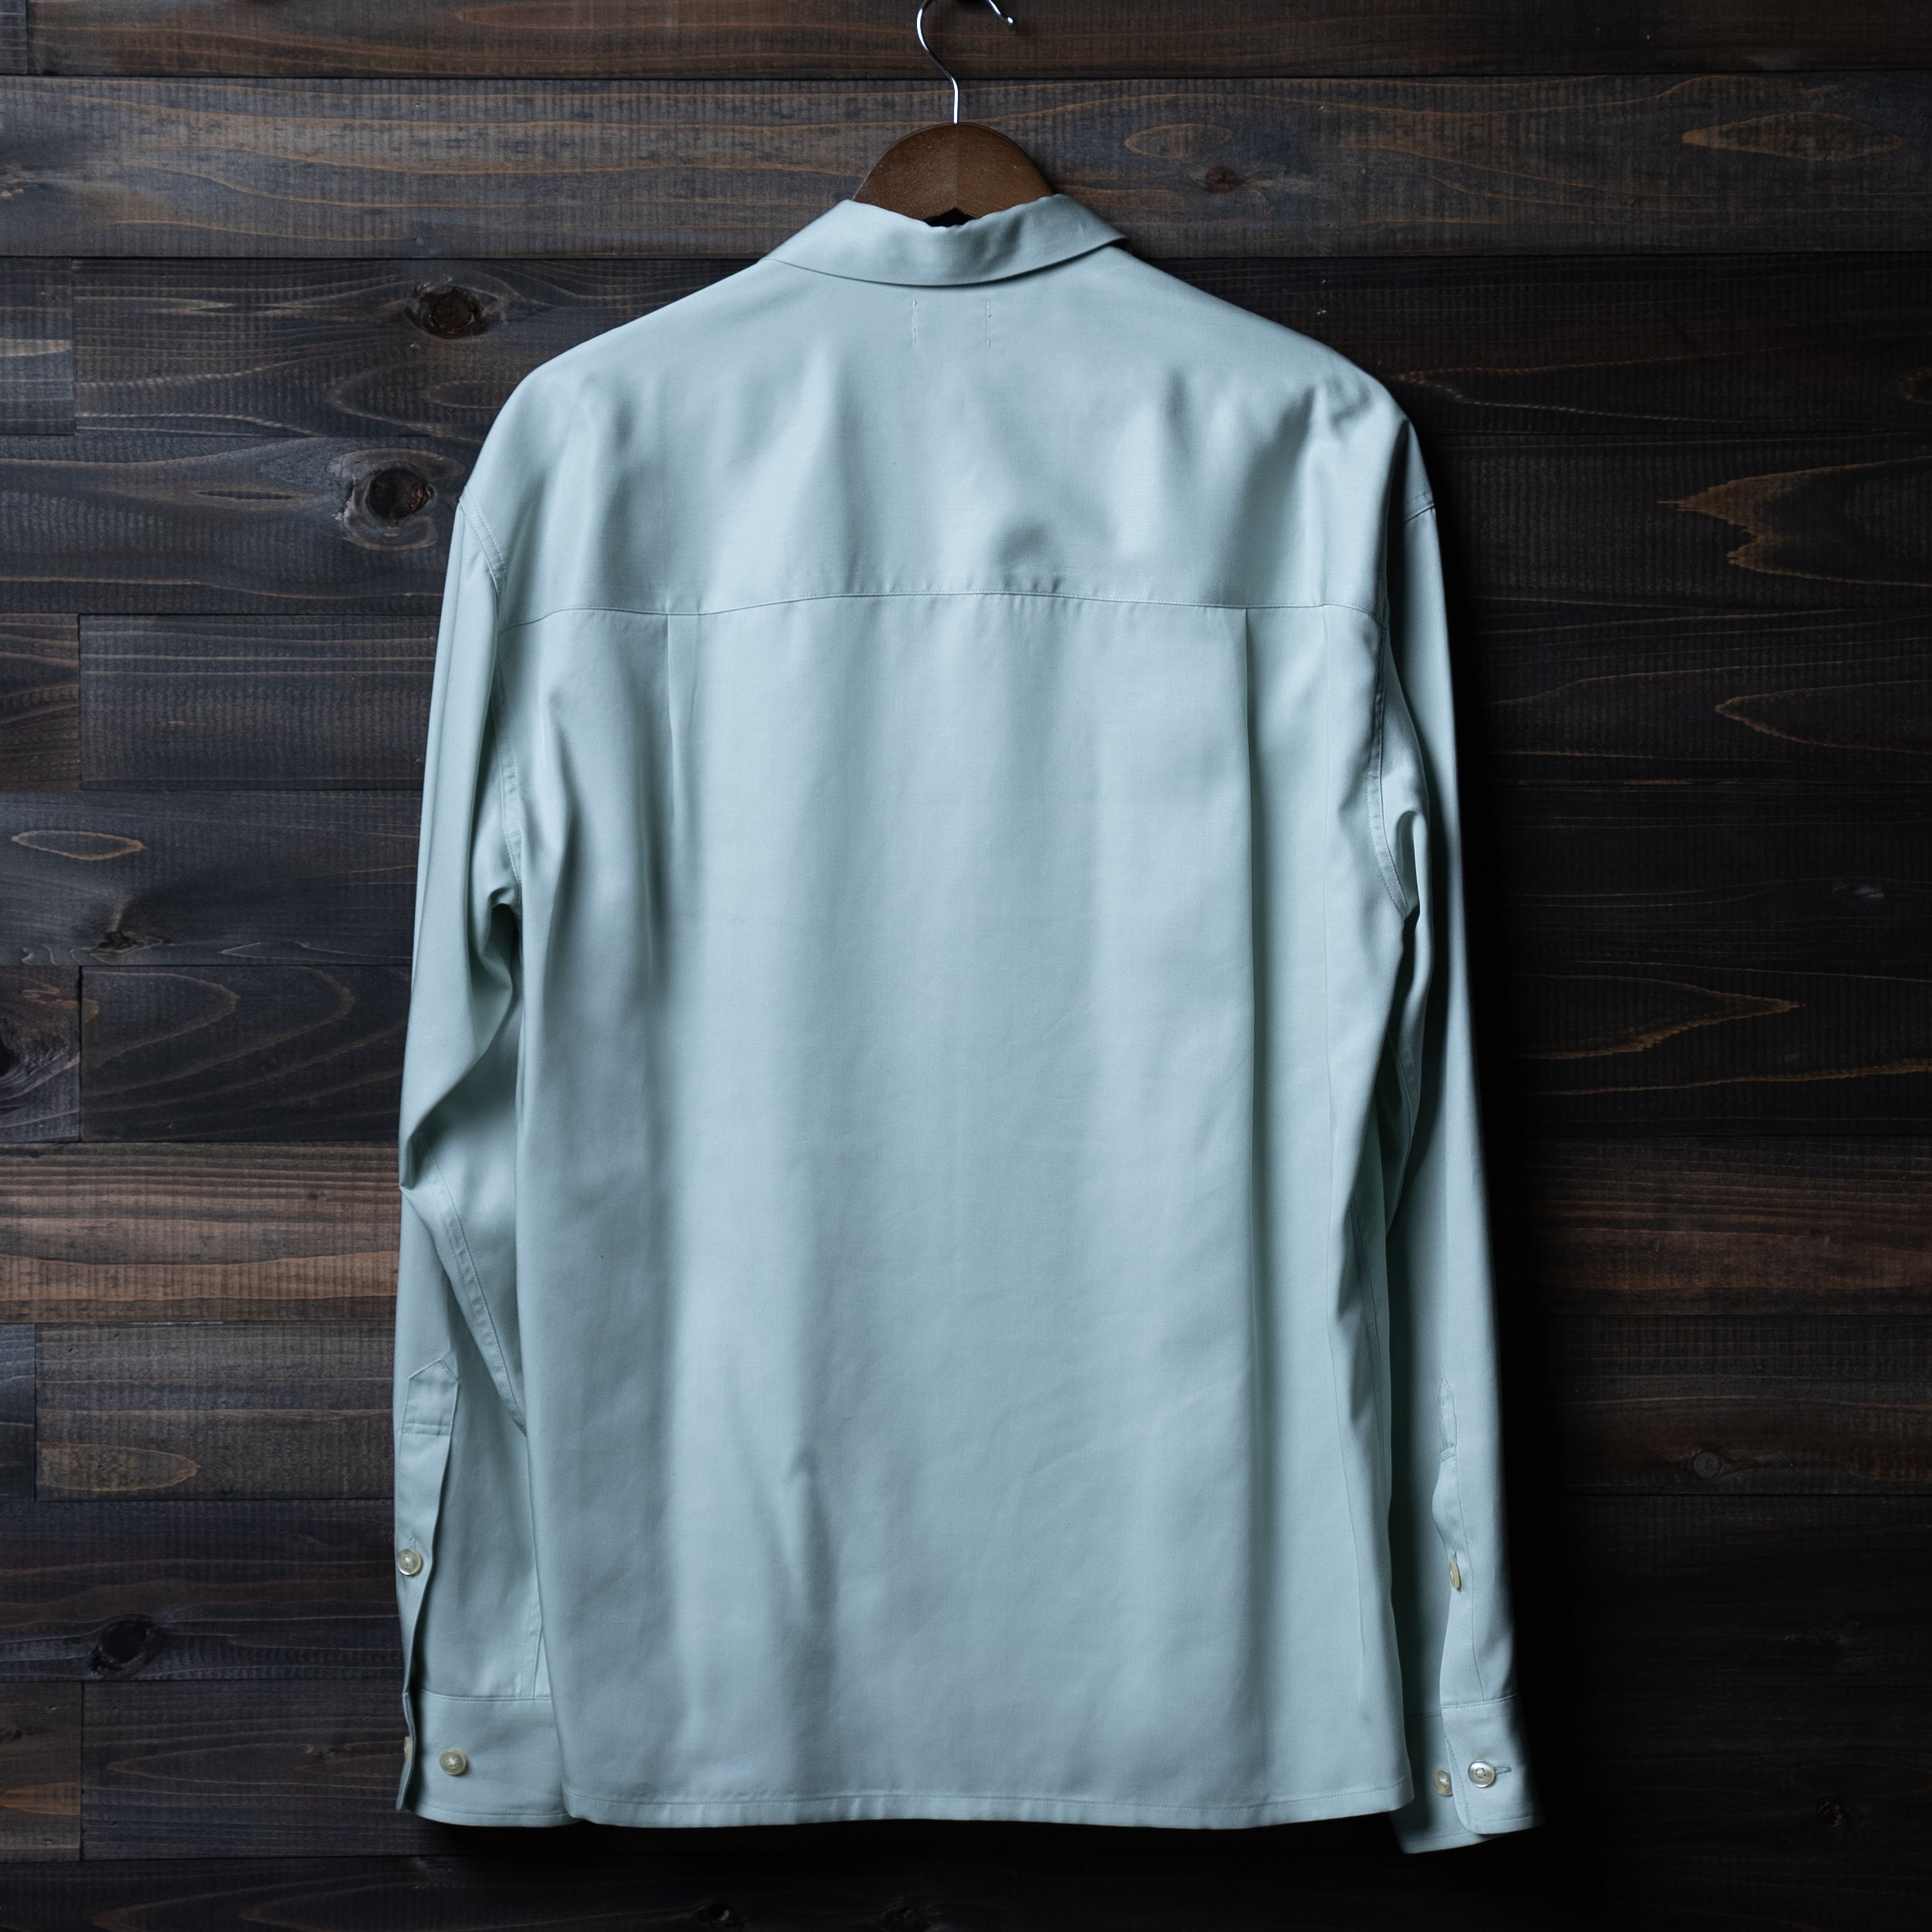 PABLO VINCI   Open collar shirt   S小さく折り畳み発送致します